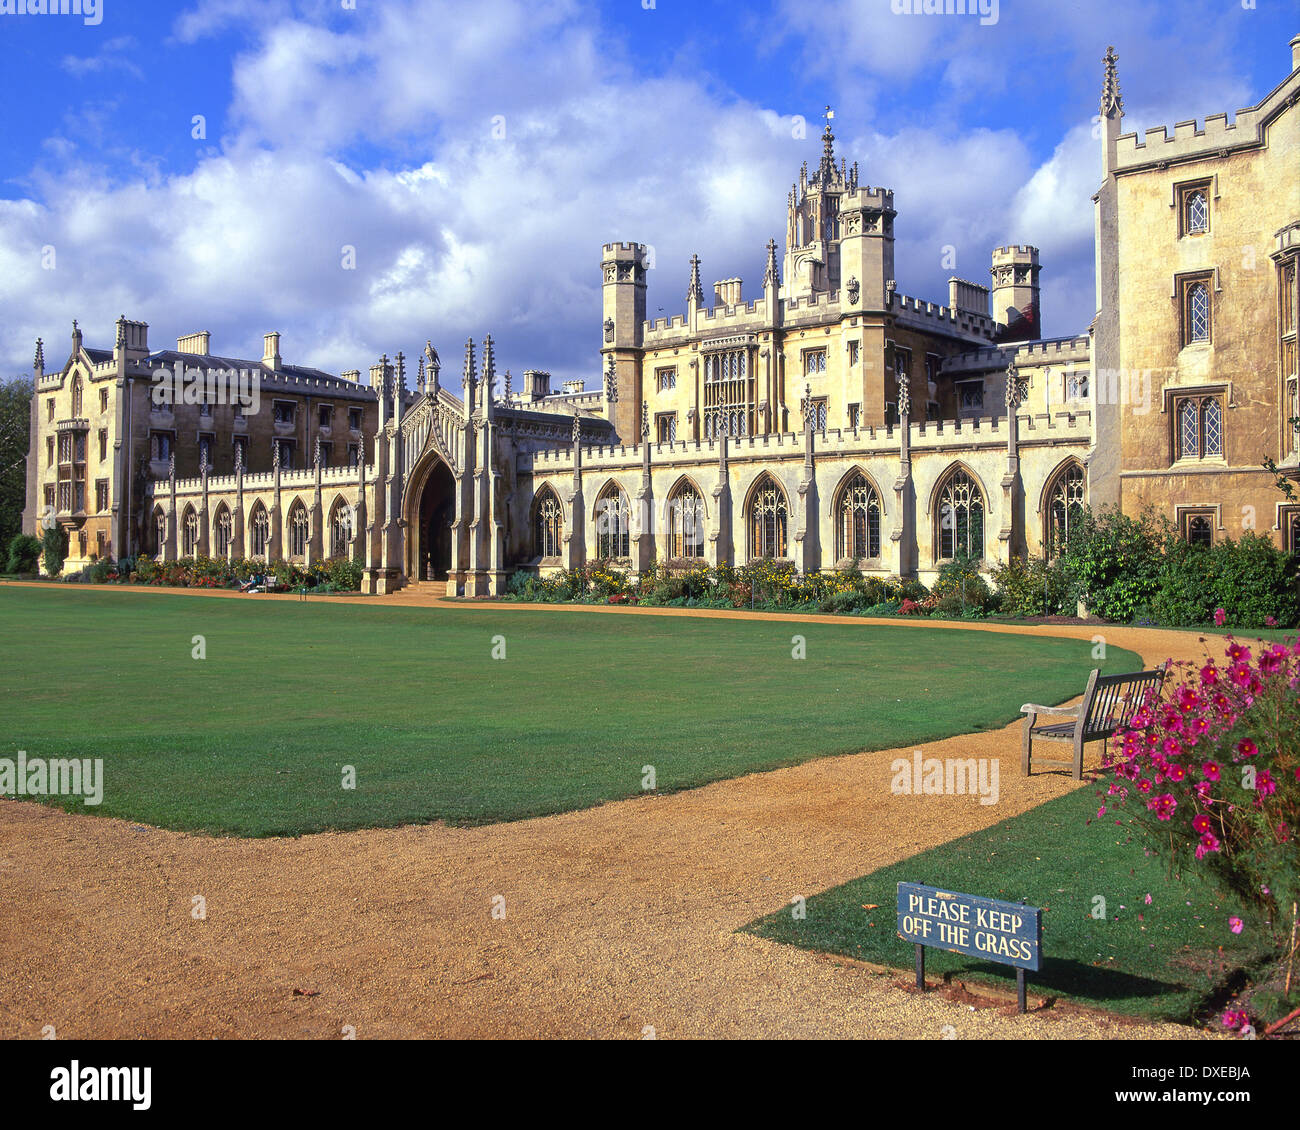 St Johns College di Cambridge fondata nel 1511 dalla signora Maragret Beaufort madre del re Enrico VII - Città di Cambridge.in Inghilterra. Foto Stock